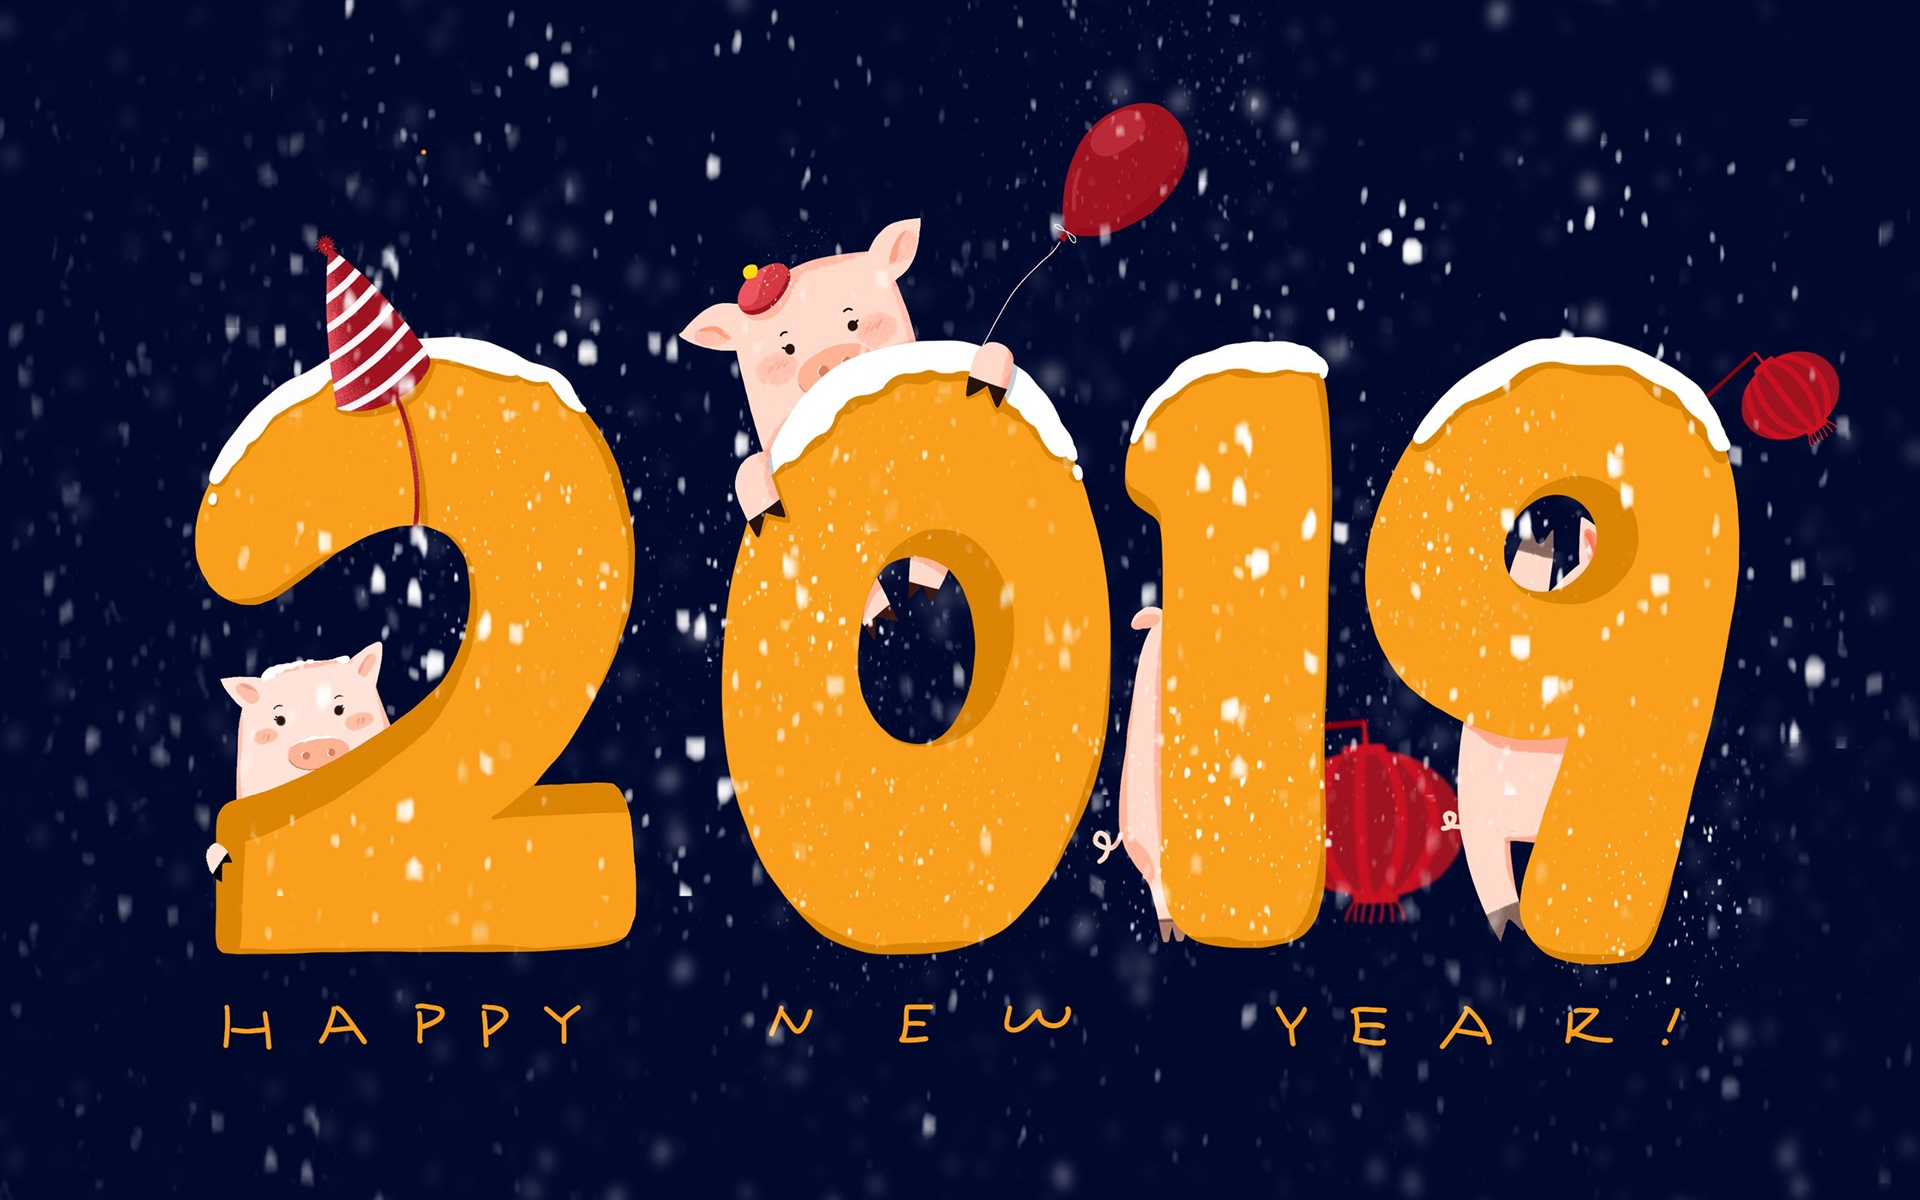 Feliz año nuevo 2019 HD wallpapers #18 - 1920x1200